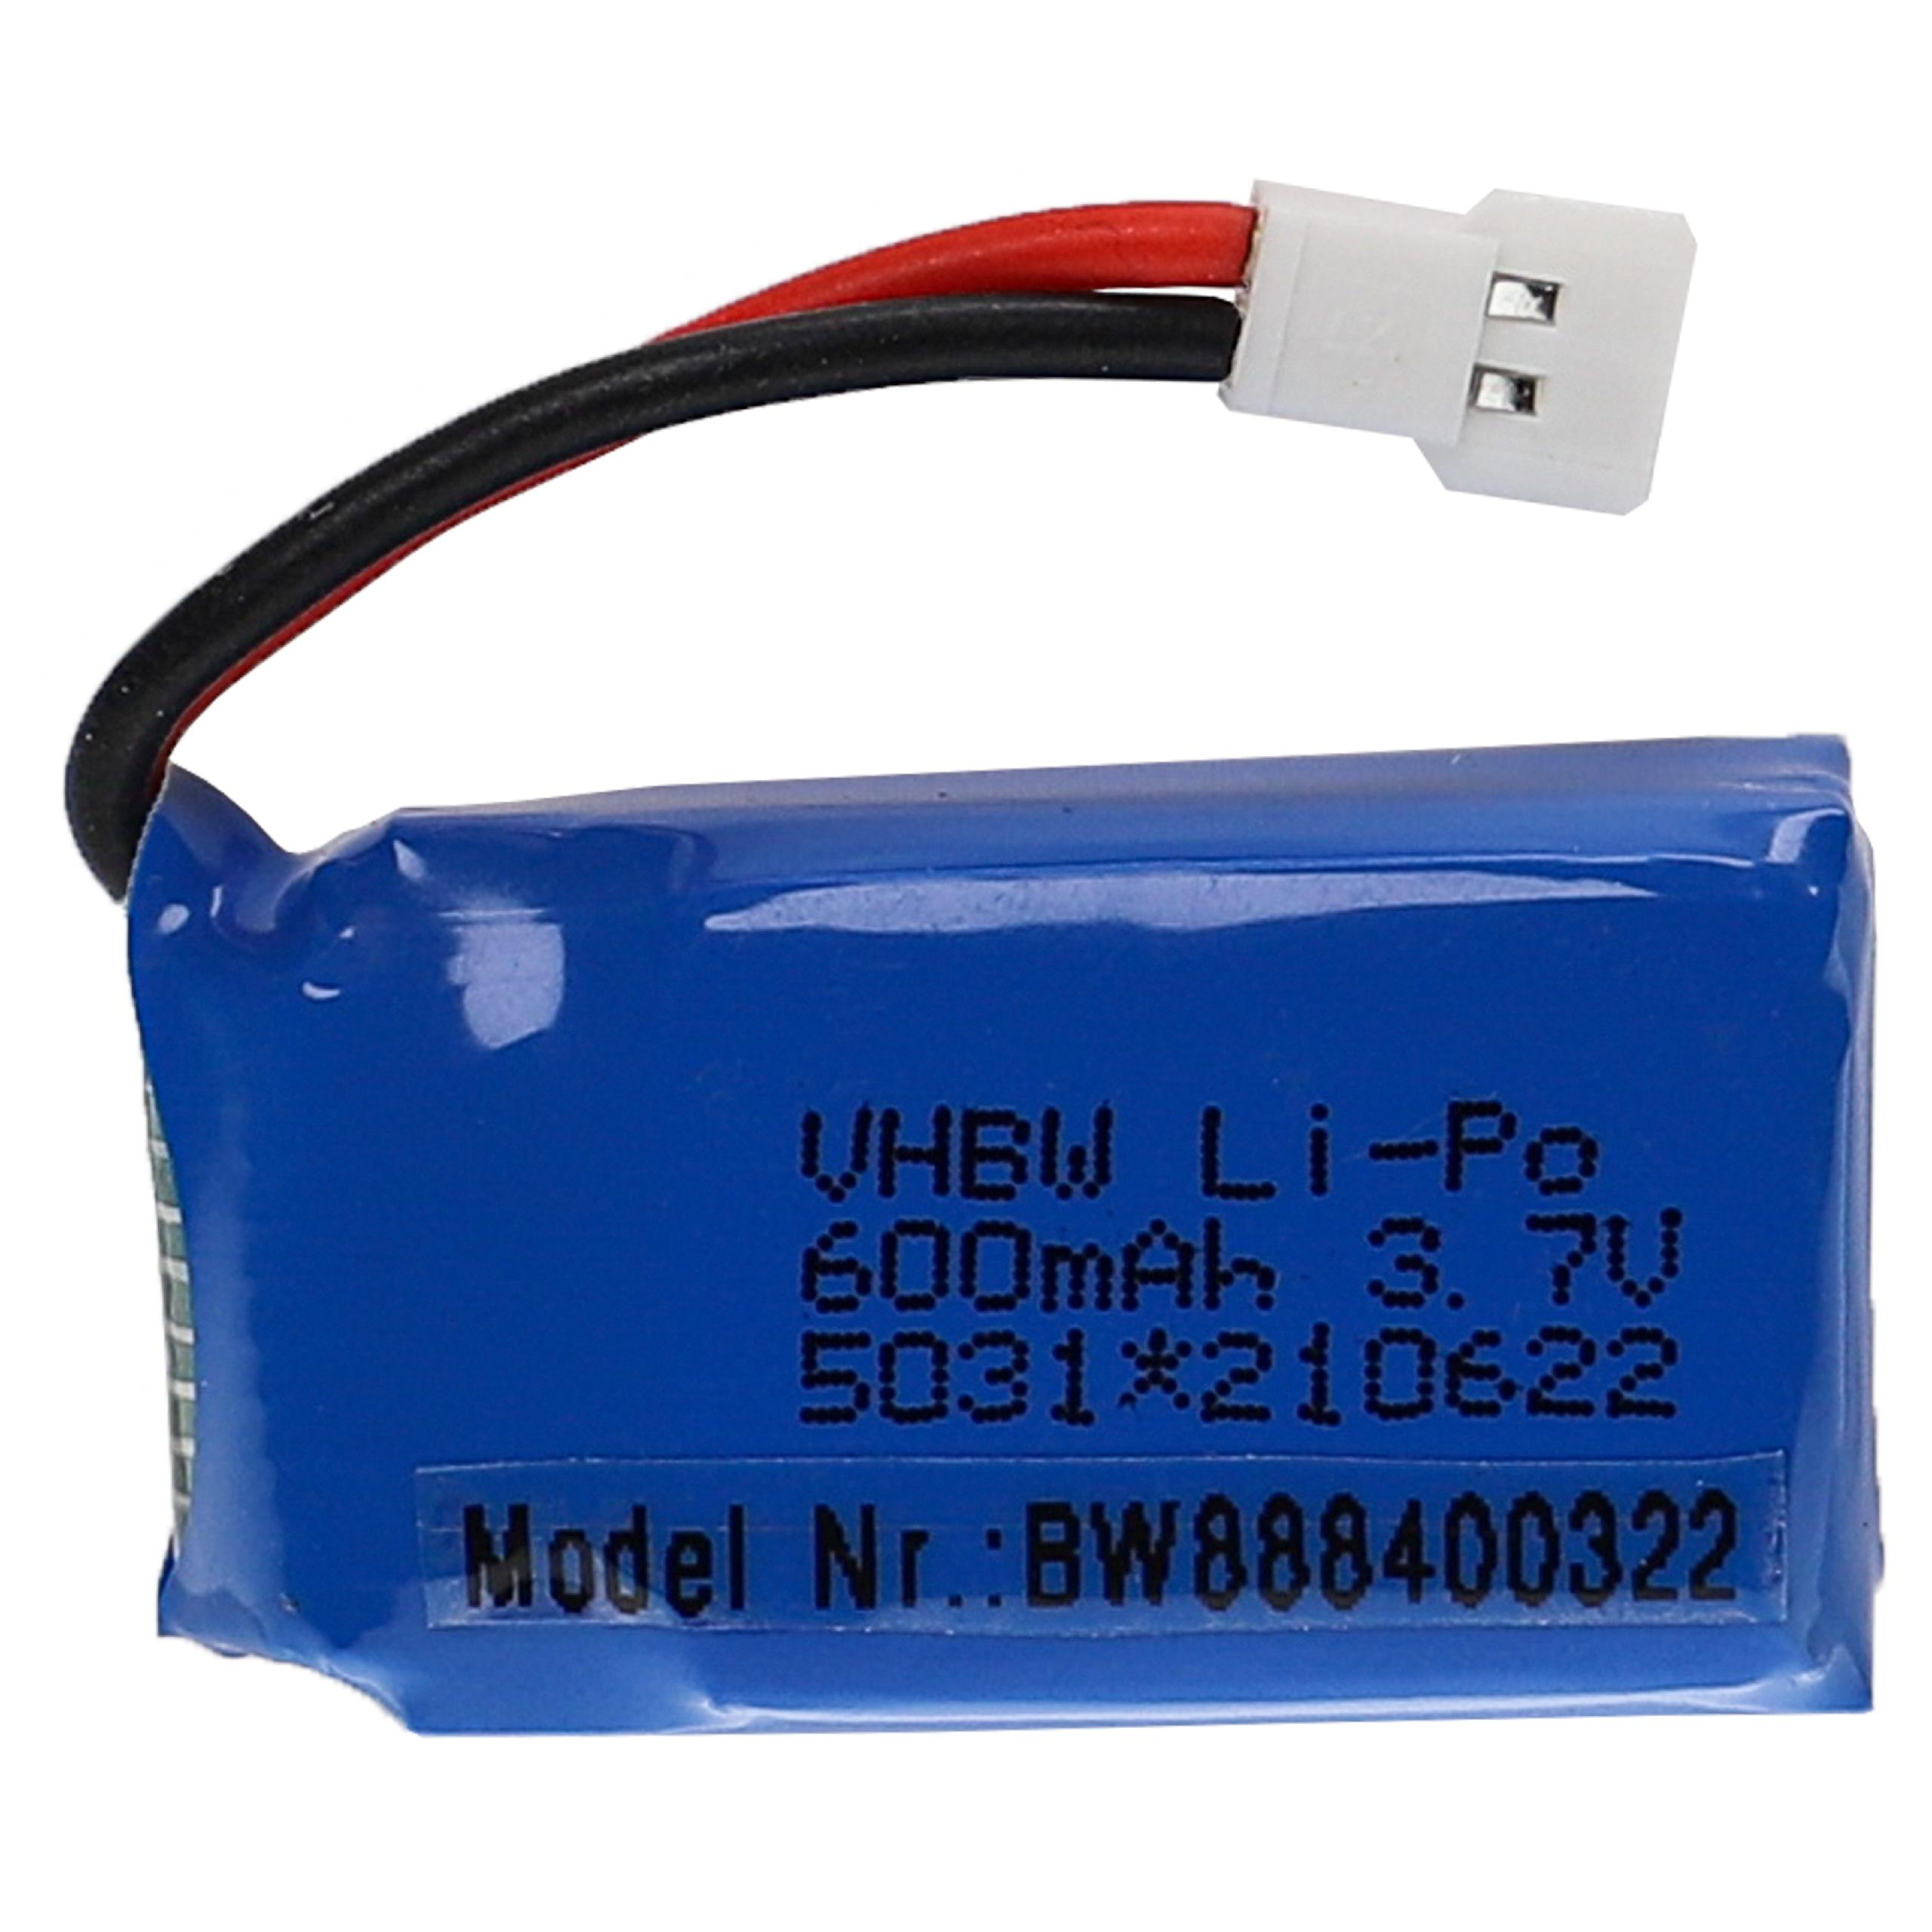 Batería para dispositivos modelismo - 600 mAh 3,7 V Li-poli, XH 2.54 2P